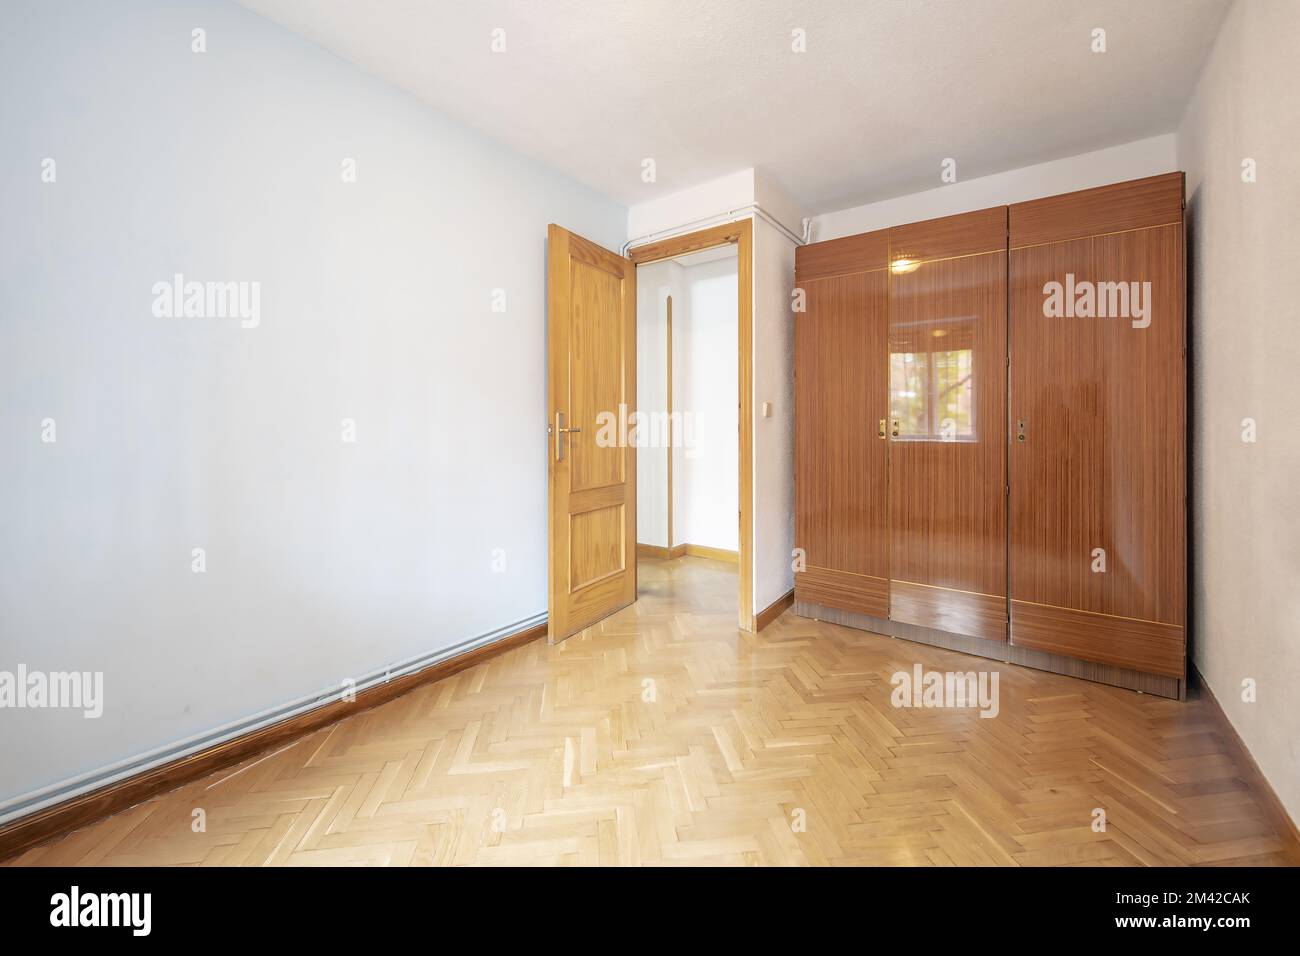 Une chambre vide avec une armoire avec trois sections de portes vernies brillantes avec parquet en chêne placé dans un motif à chevrons et des tuyaux d'eau chaude Banque D'Images